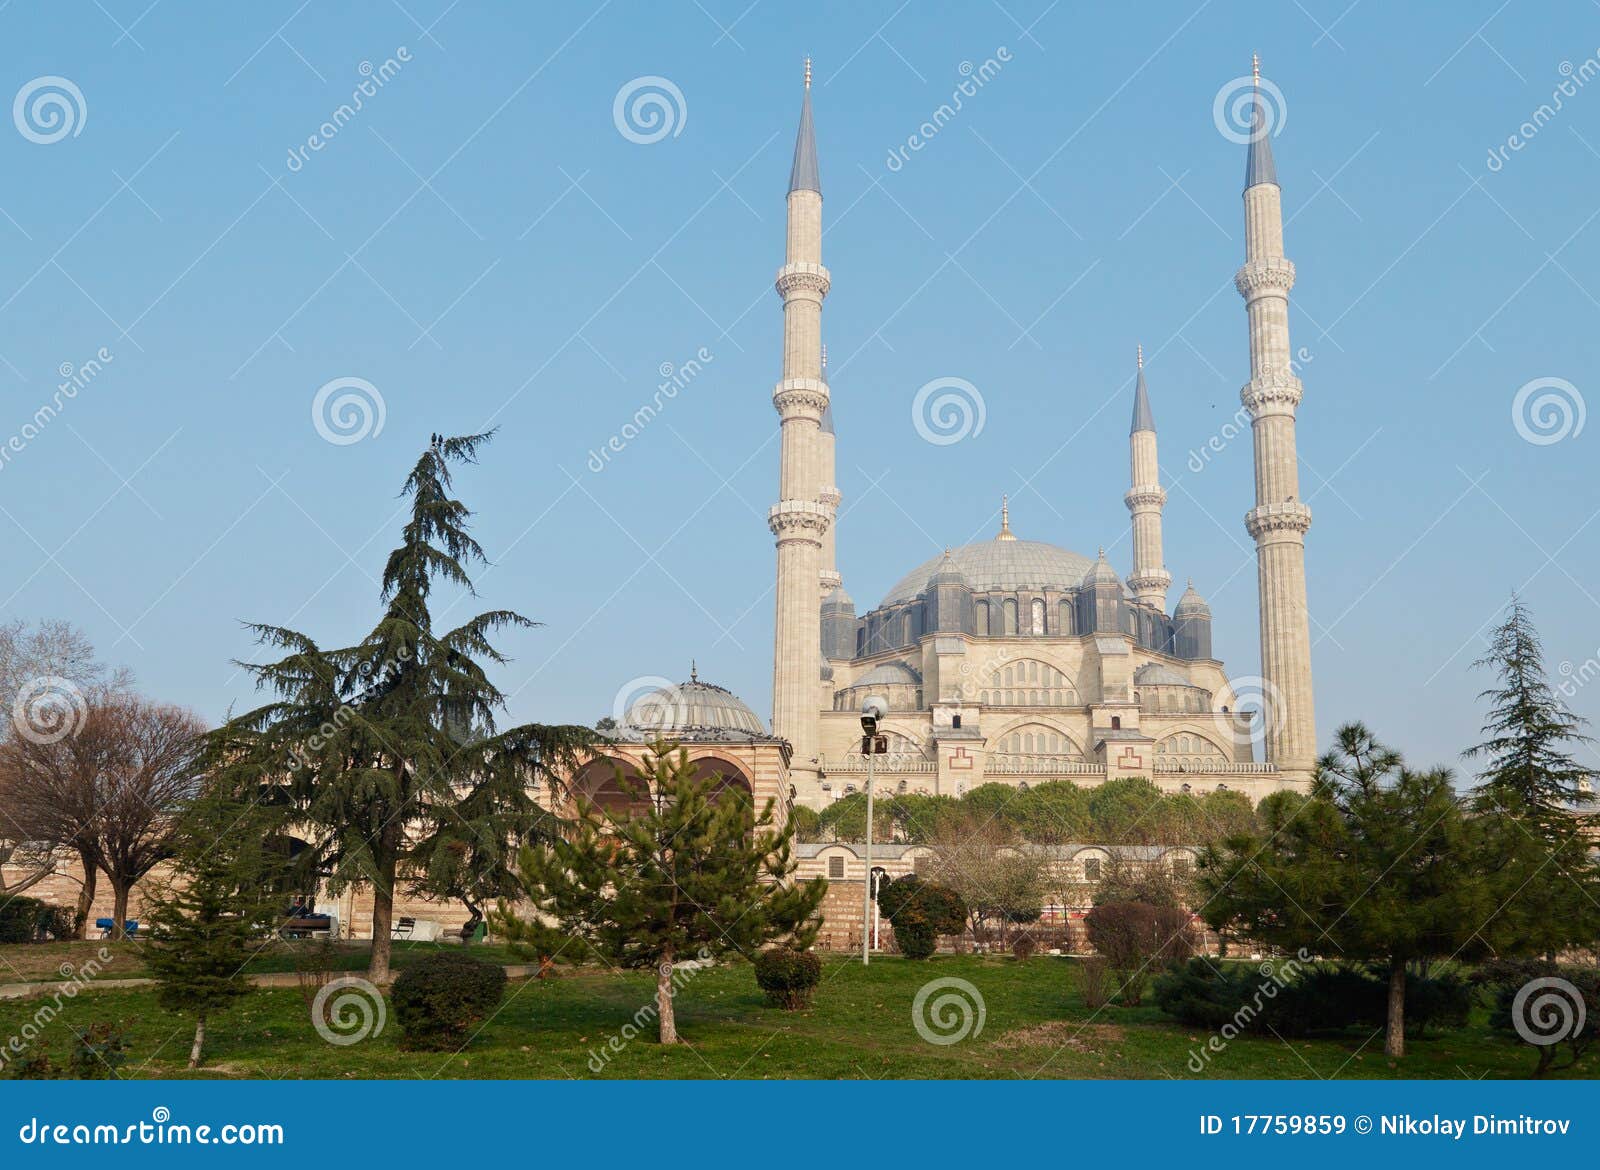 edirne selimiye mosque